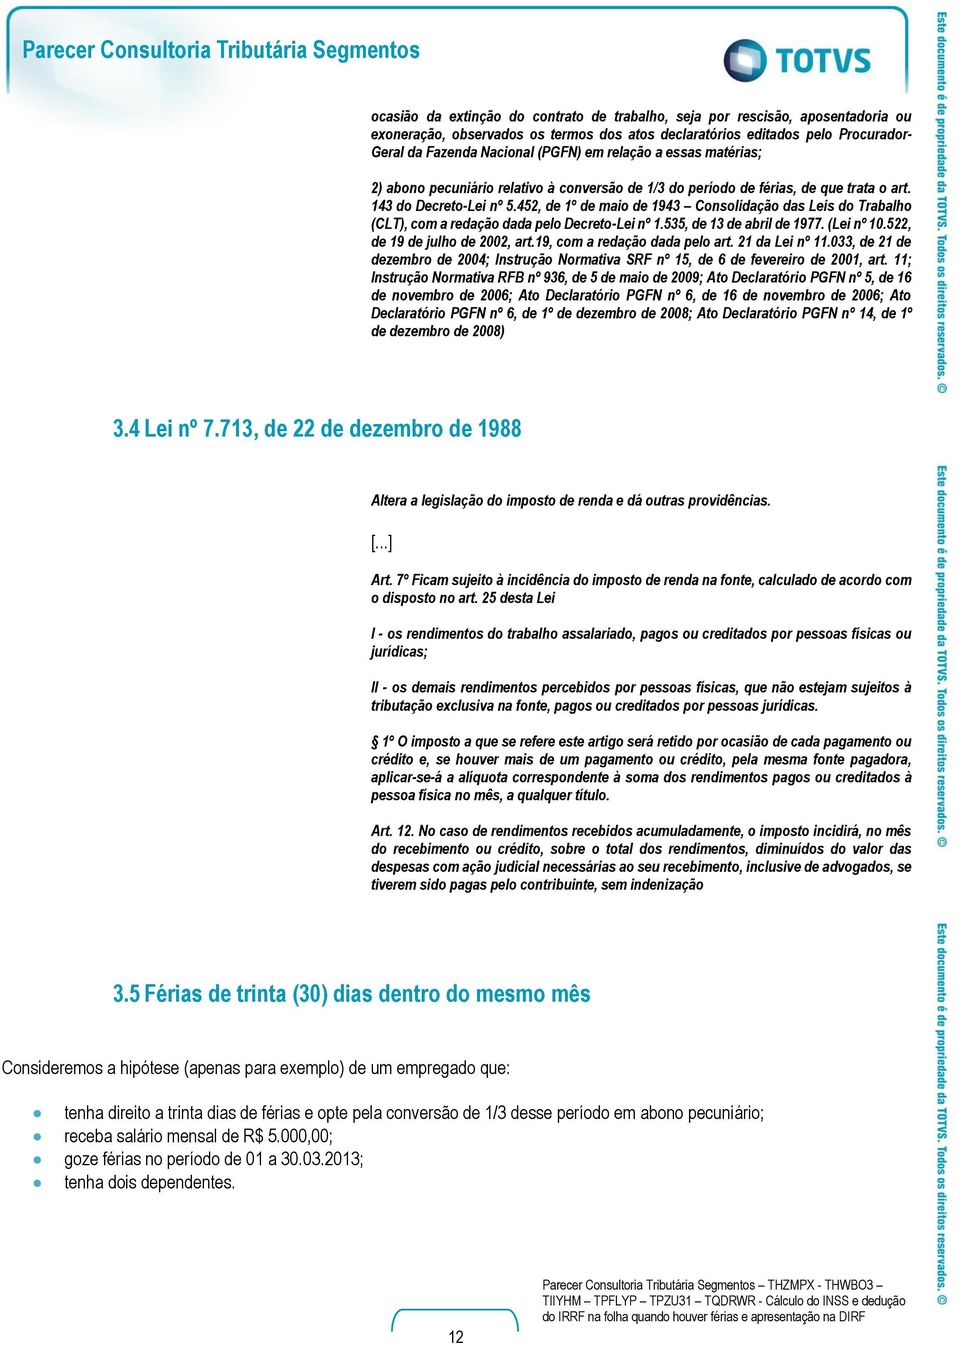 452, de 1º de maio de 1943 Consolidação das Leis do Trabalho (CLT), com a redação dada pelo Decreto-Lei nº 1.535, de 13 de abril de 1977. (Lei nº 10.522, de 19 de julho de 2002, art.